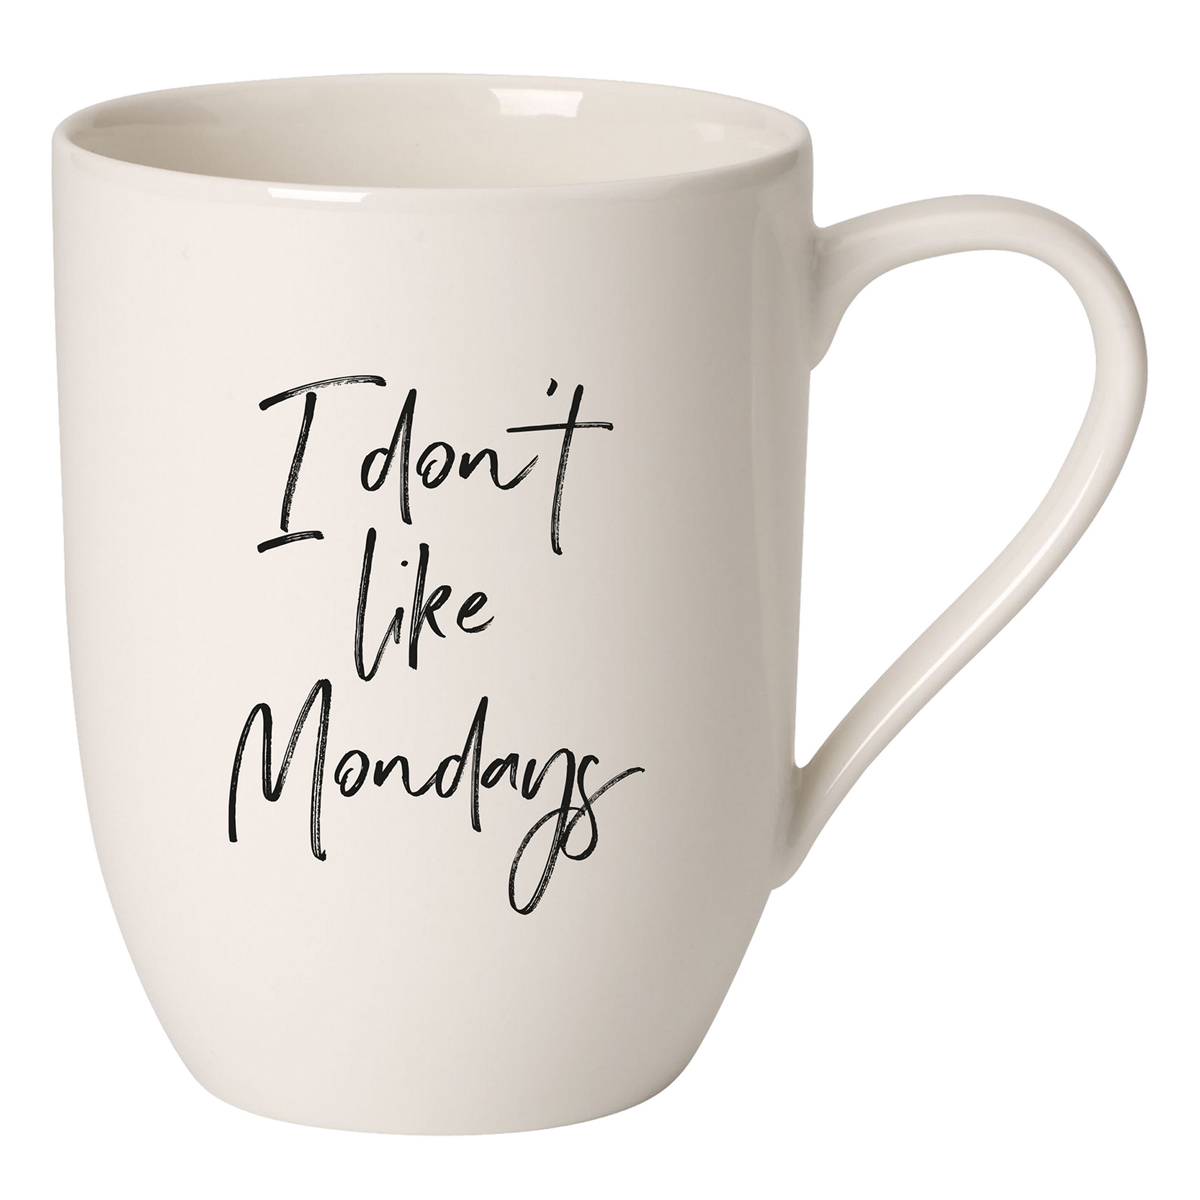 Villeroy and Boch Statement Mug I don't like Mondays